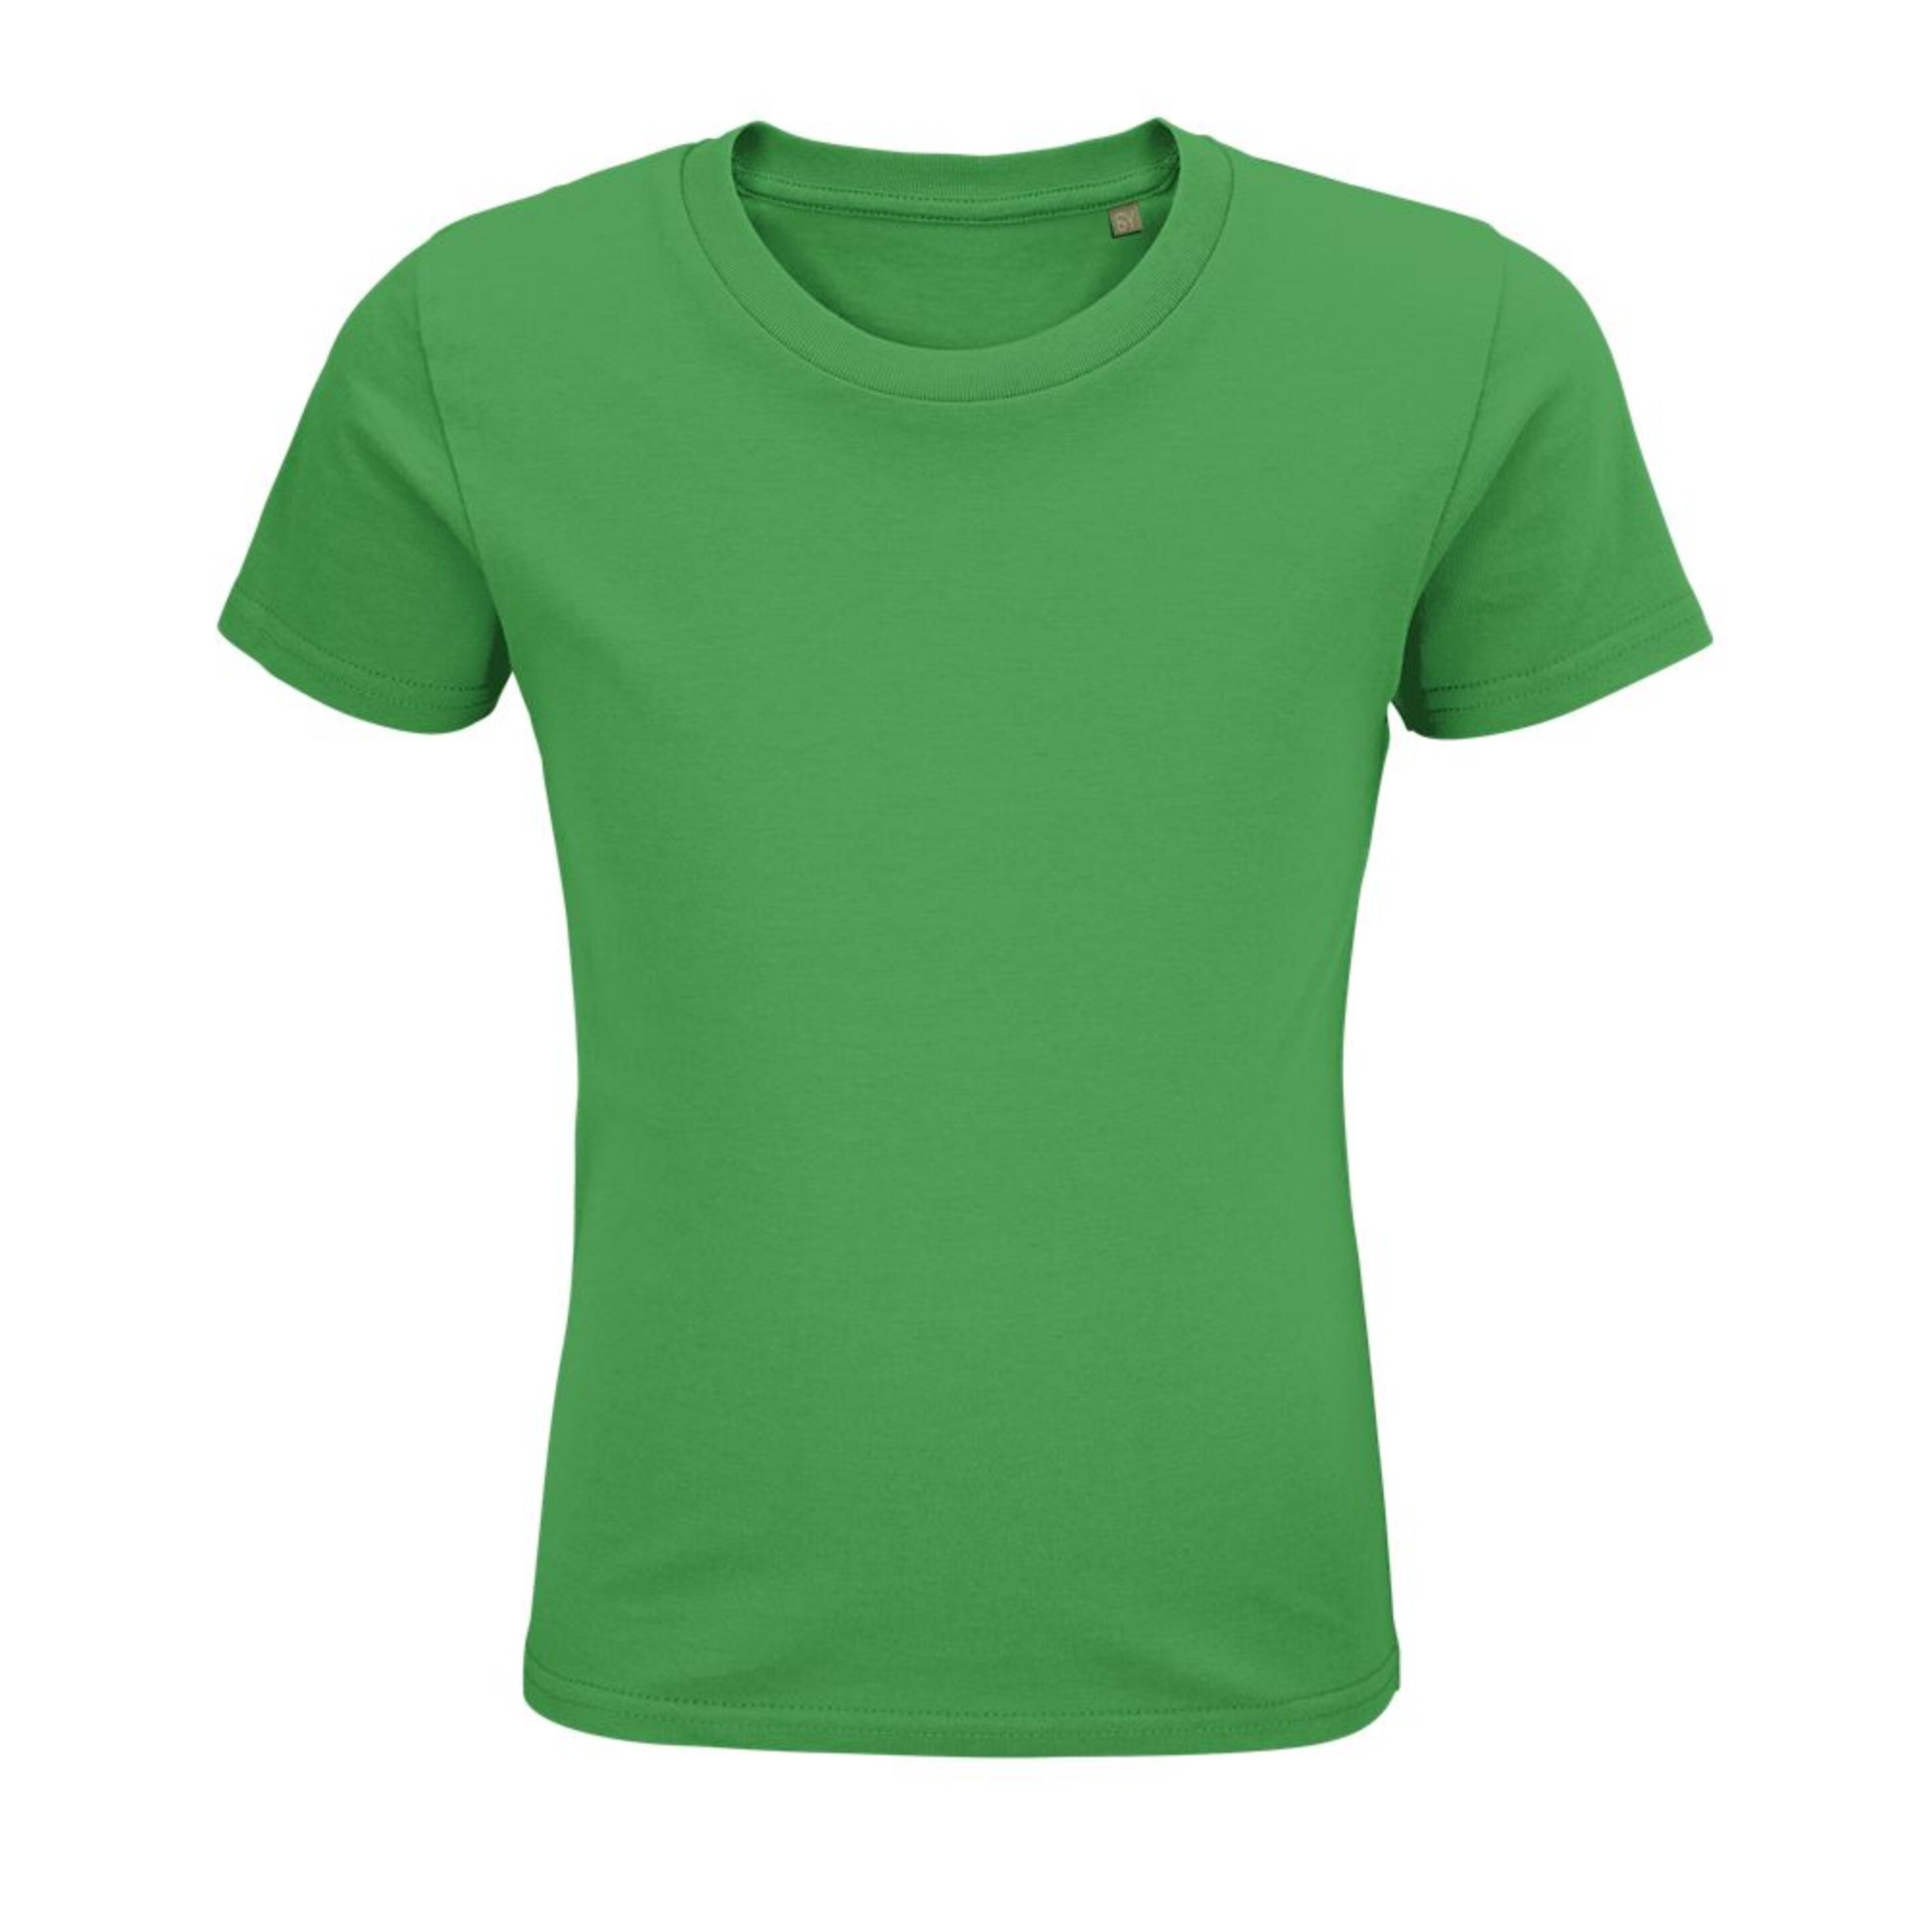 T-shirt Marnaula Pionner Kids - verde - 